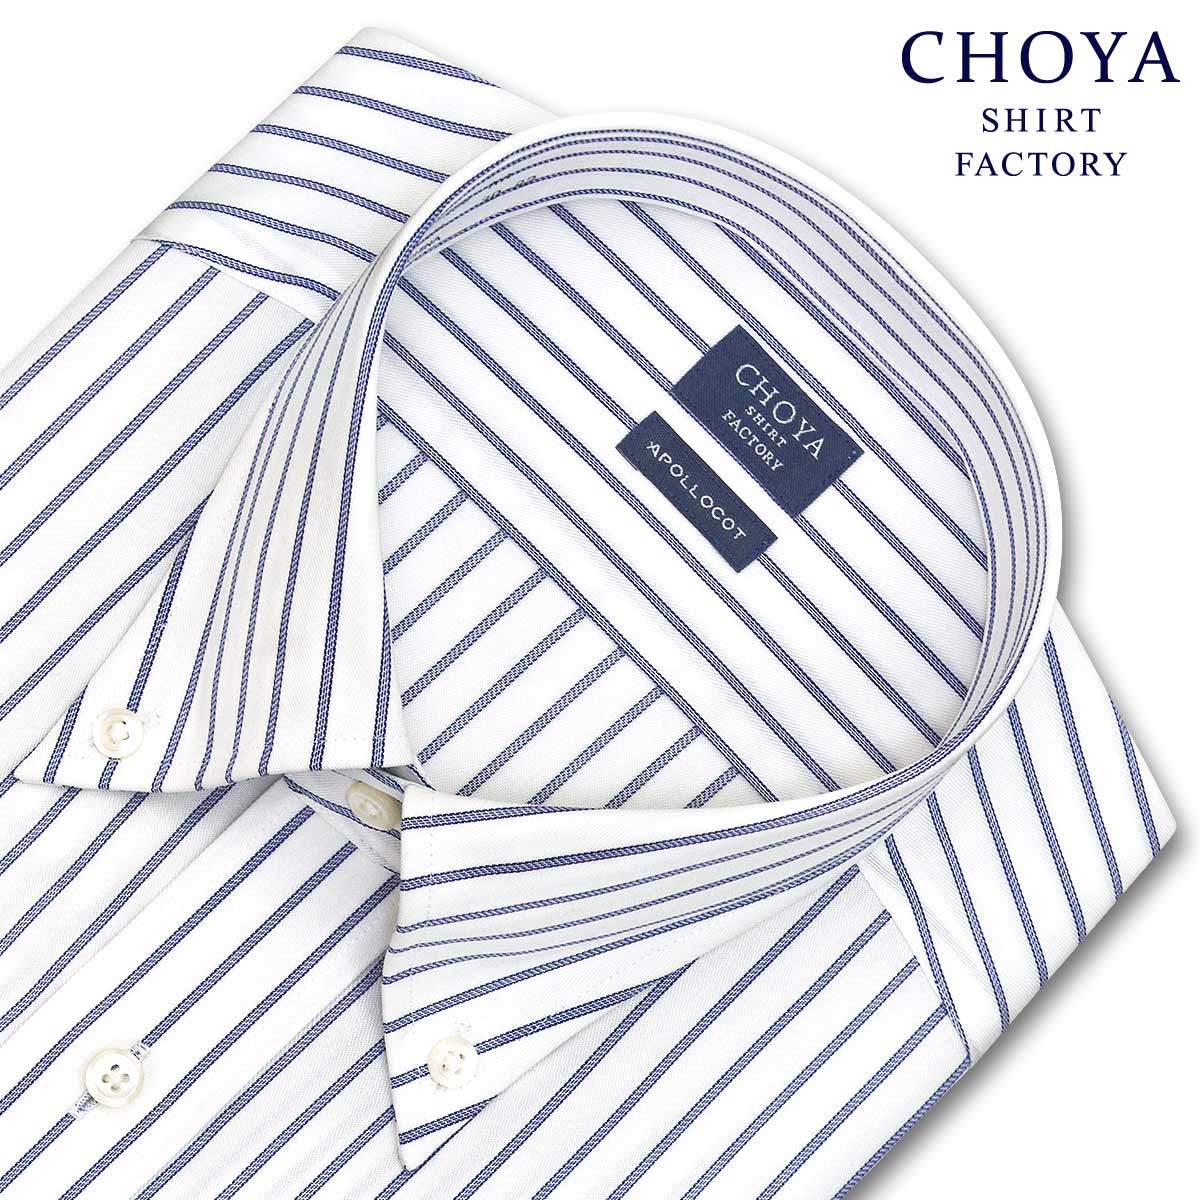 Yシャツ 日清紡アポロコット 長袖 ワイシャツ メンズ 形態安定 ブルーストライプ ボタンダウンシャツ 綿100% ブルー CHOYA SHIRT FACTORY(cfd134-450) (sa1) 24FA